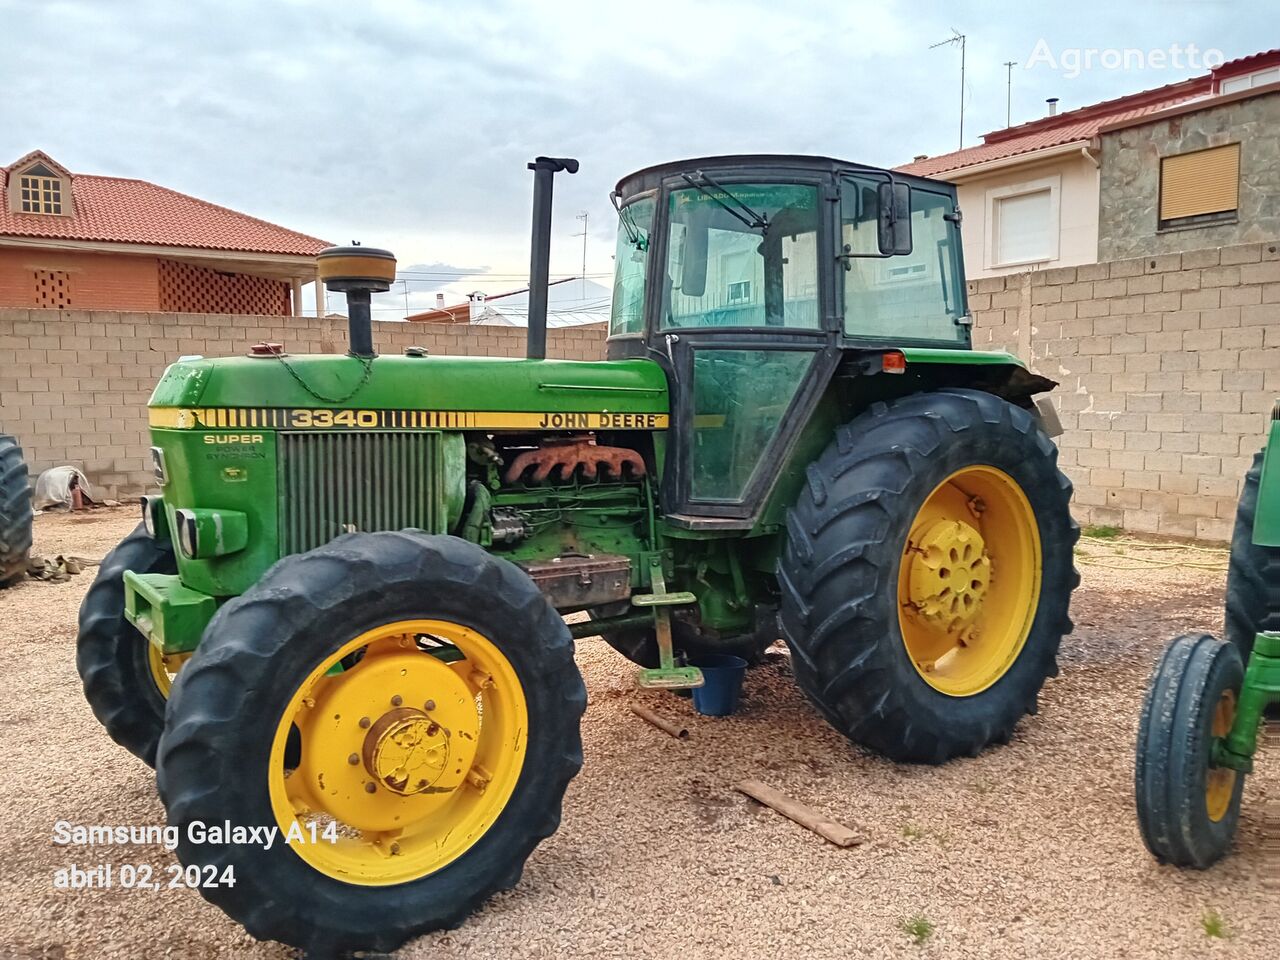 John Deere 3340 kerekes traktor